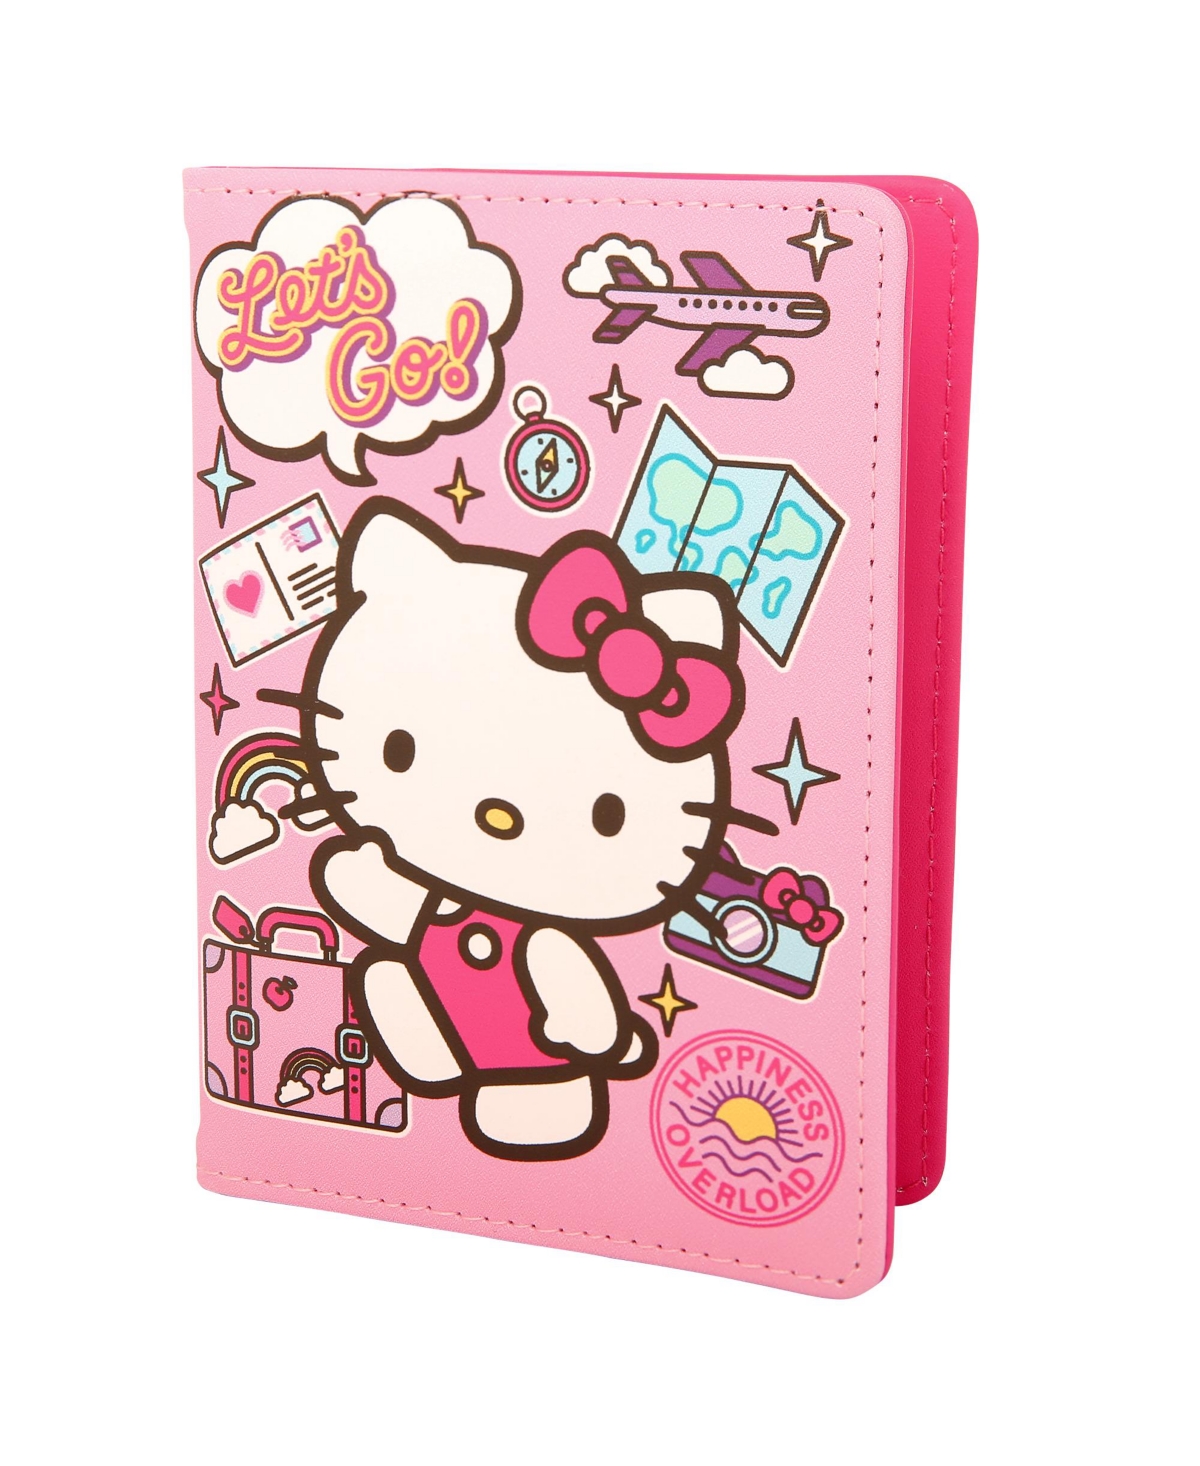 Sanrio Hello Kitty Passport Holder Travel Accessories Gifts - Pink, white